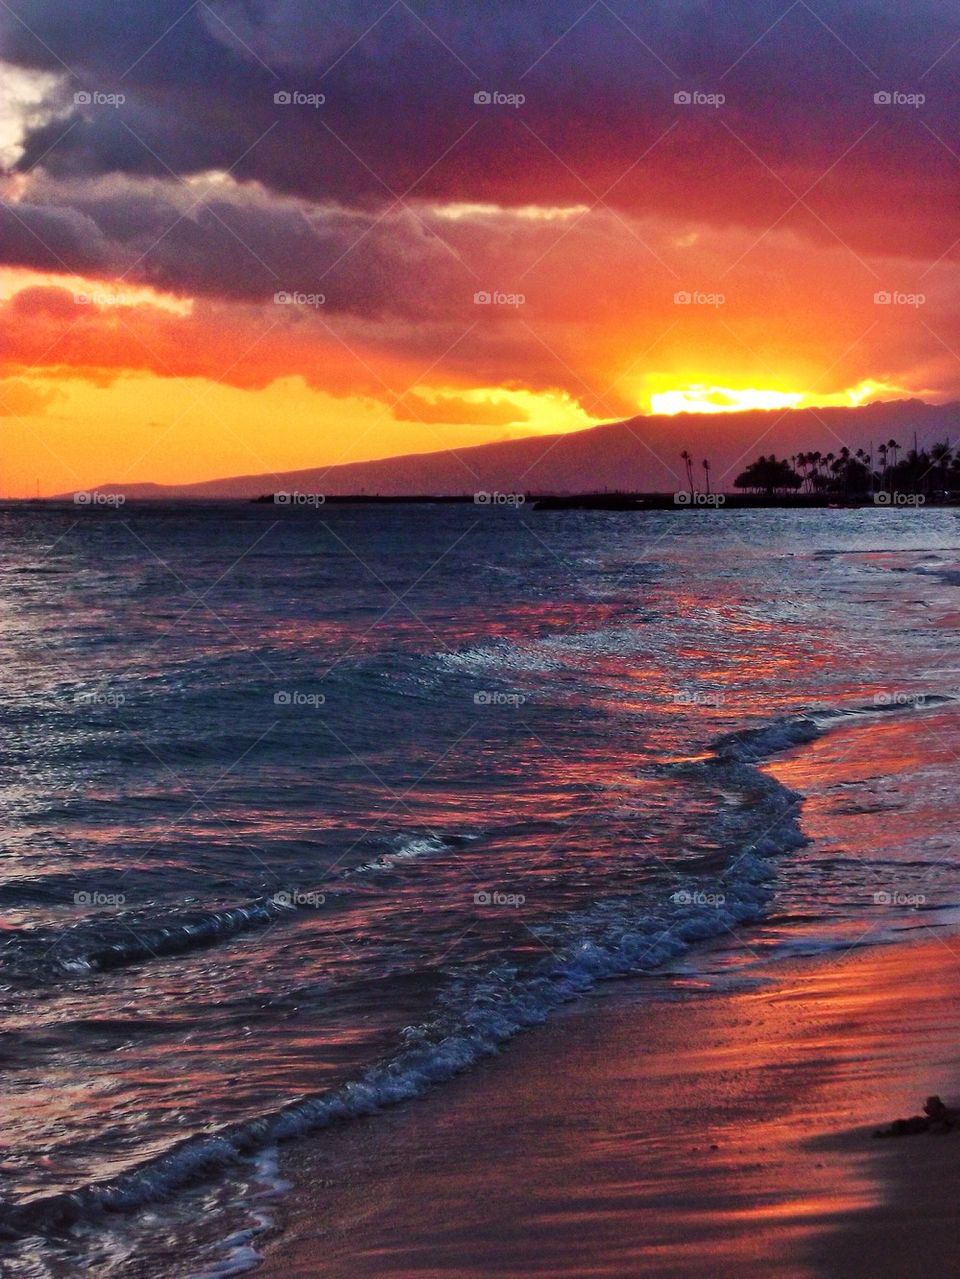 Waikiki beach sunset